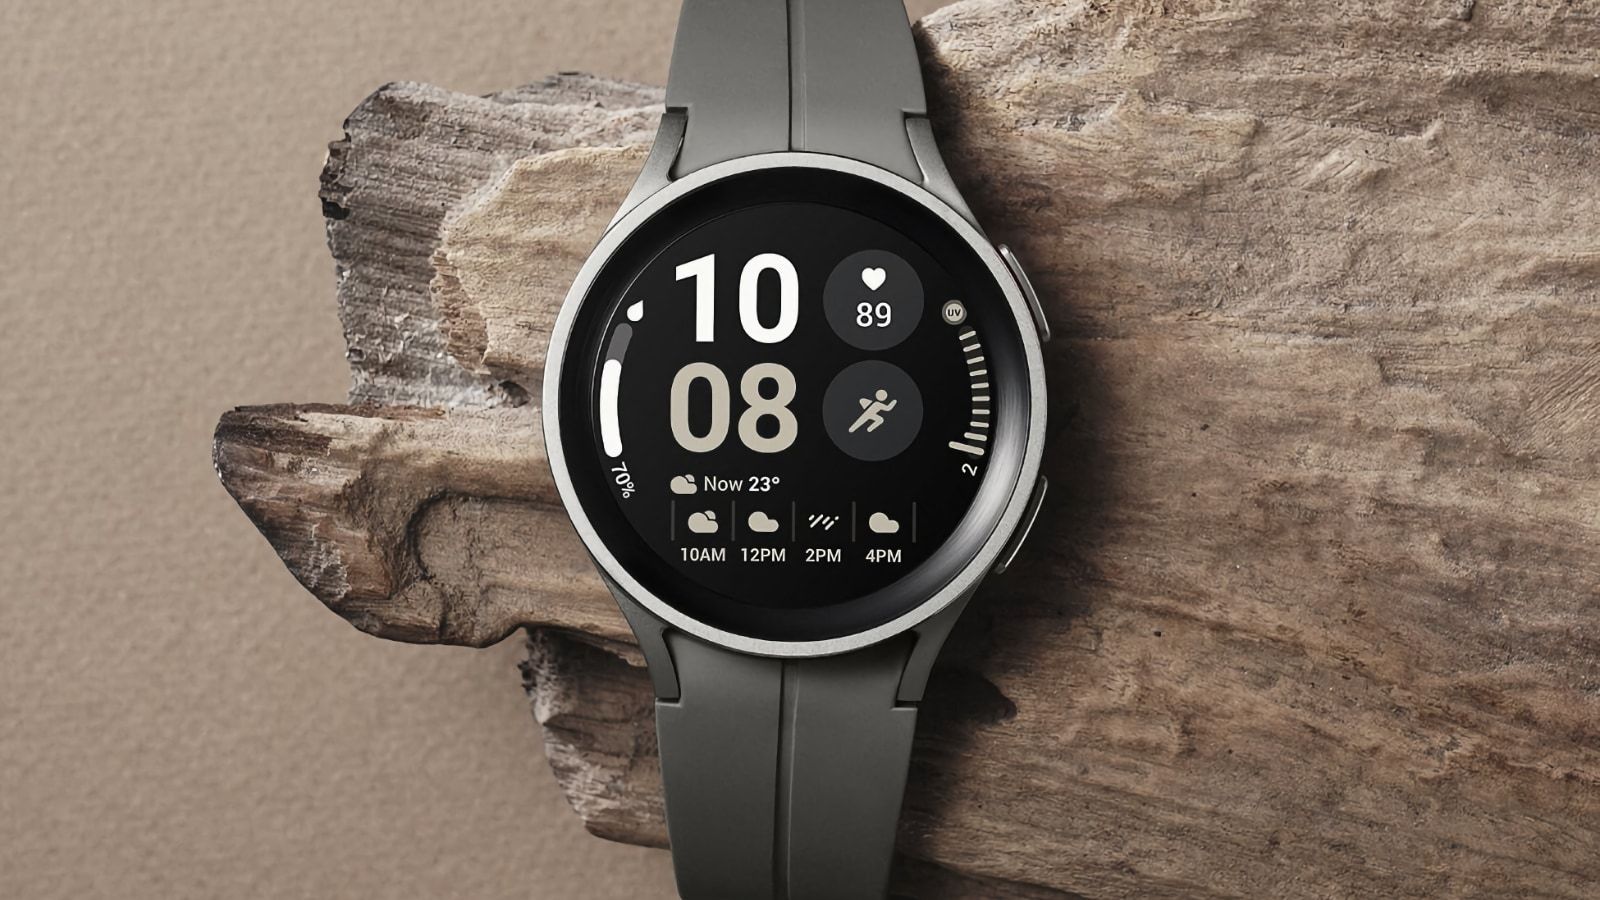 Louis Vuitton collabore avec Google pour une montre connectée